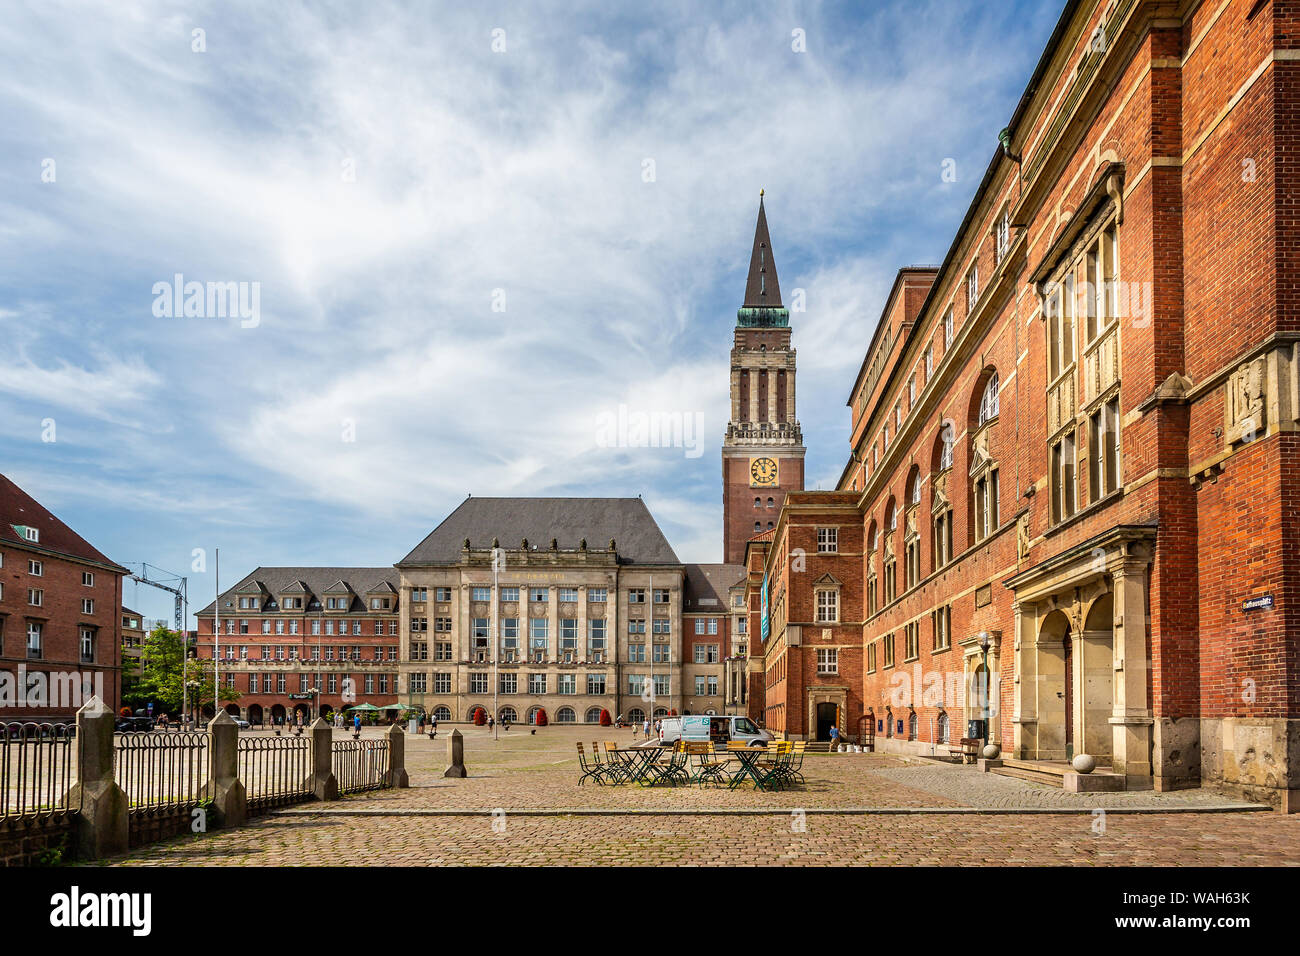 Kiel City Hall and Opera House in Kiel, Germany on 25 July 2019 Stock Photo